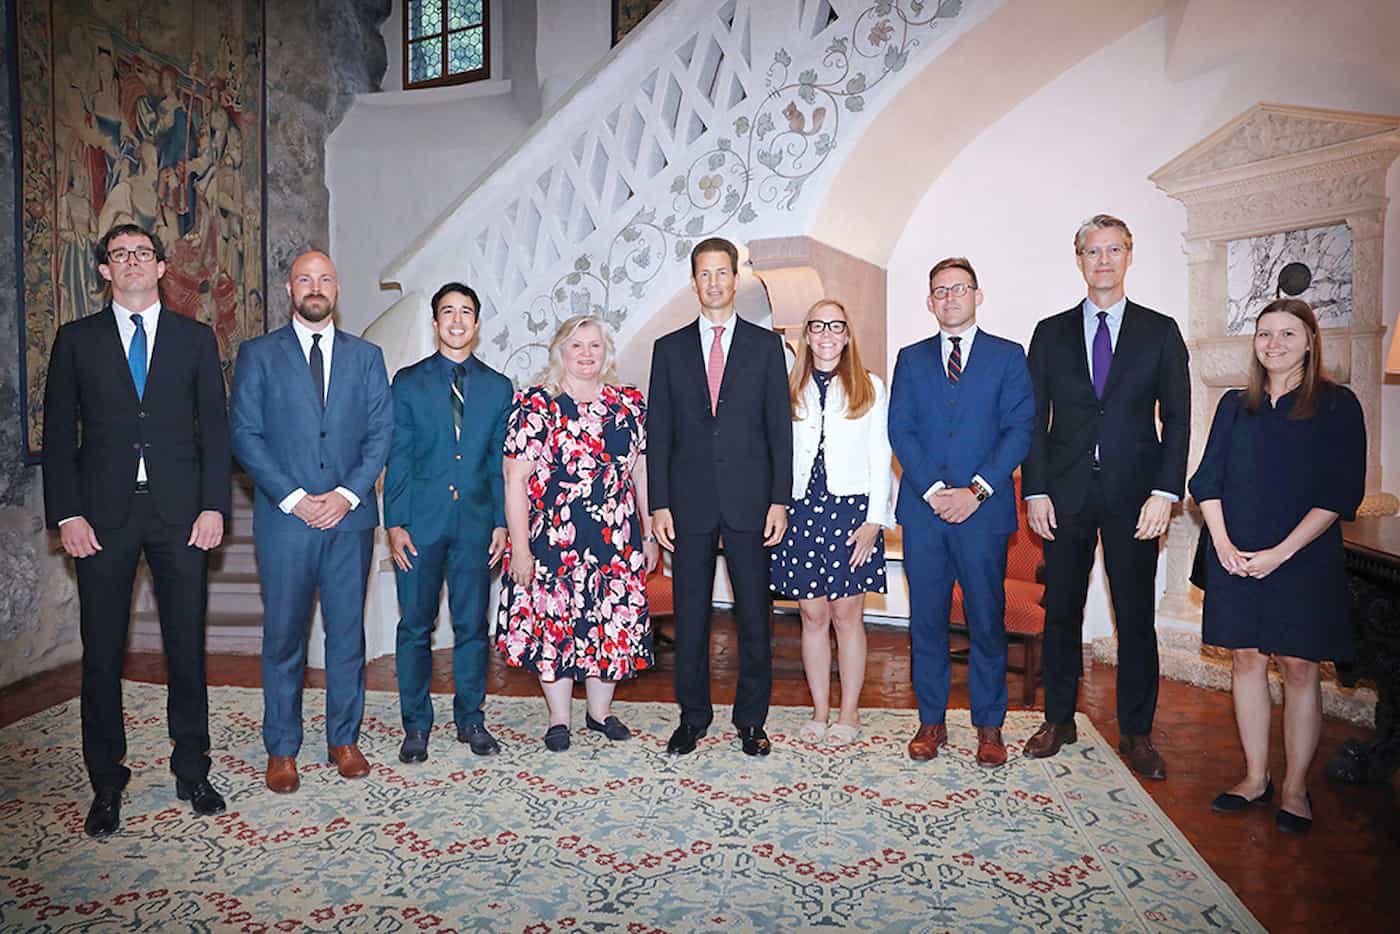 S.D. Erbprinz Alois von und zu Liechtenstein empfing die leitenden US-Kongressmitarbeiterinnen und Mitarbeiter zu einem Höflichkeitsbesuch auf Schloss Vaduz